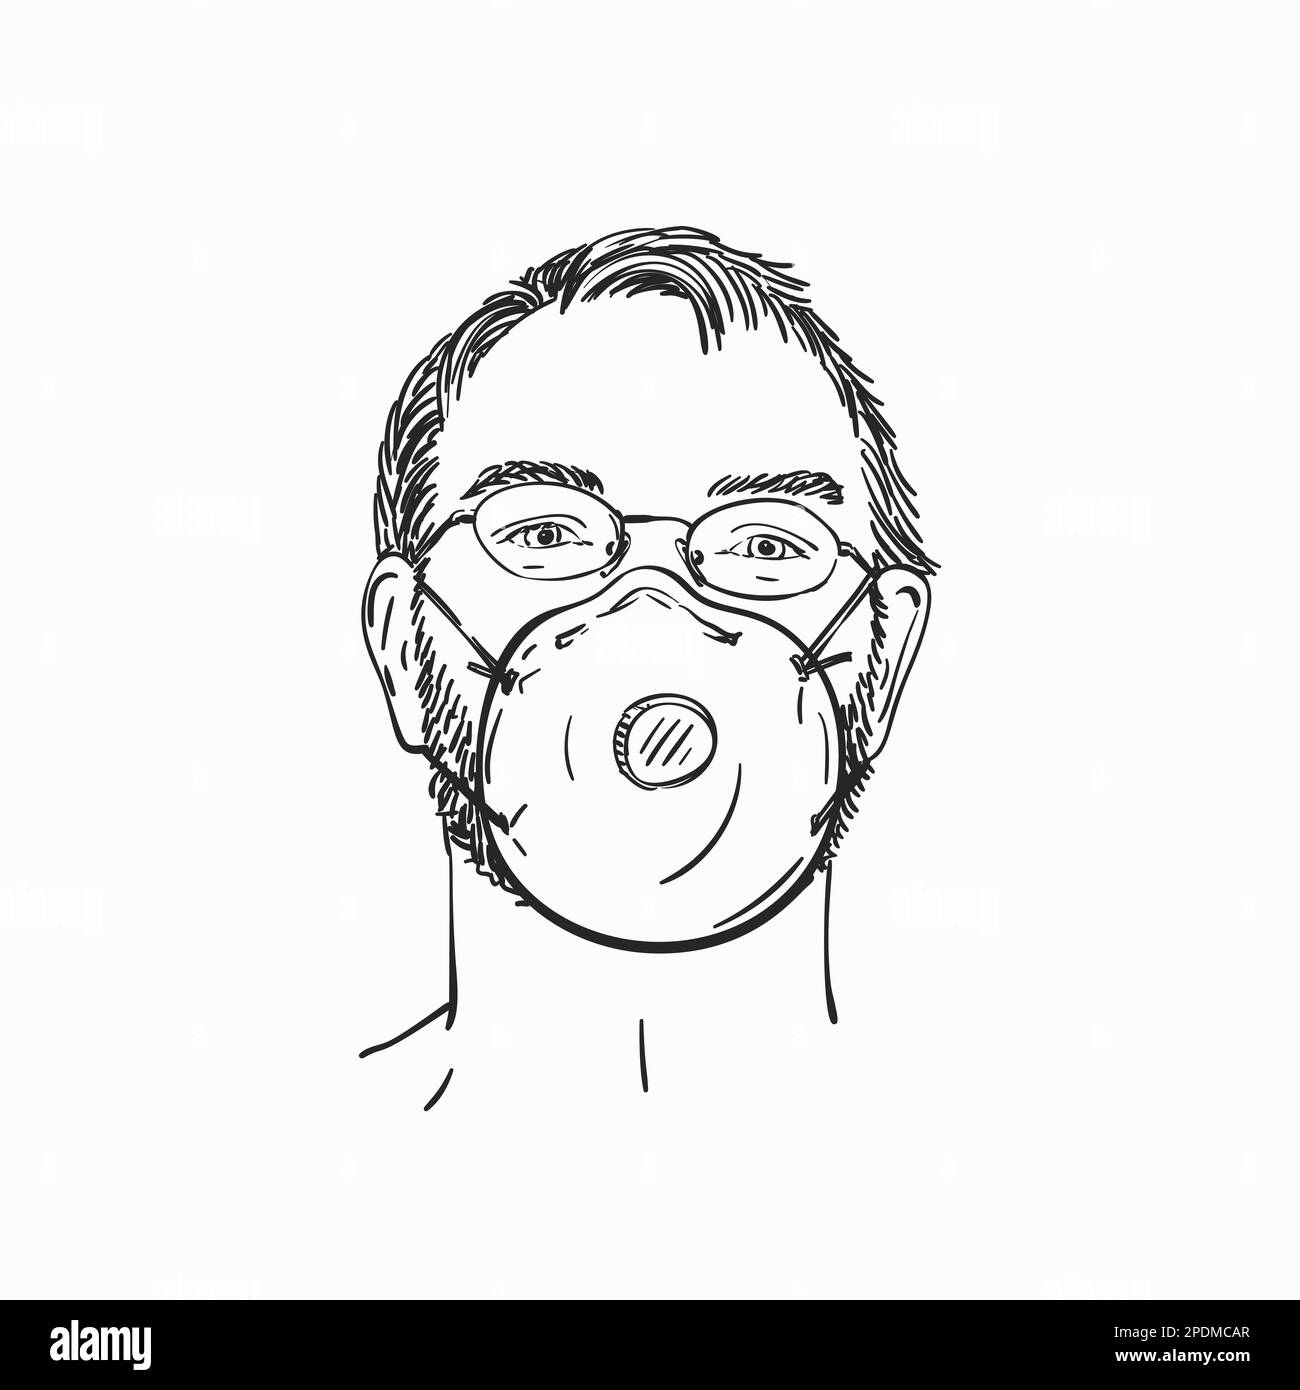 Homme portant un masque médical et des lunettes, portrait linéaire dessiné à la main, croquis vectoriel Illustration de Vecteur